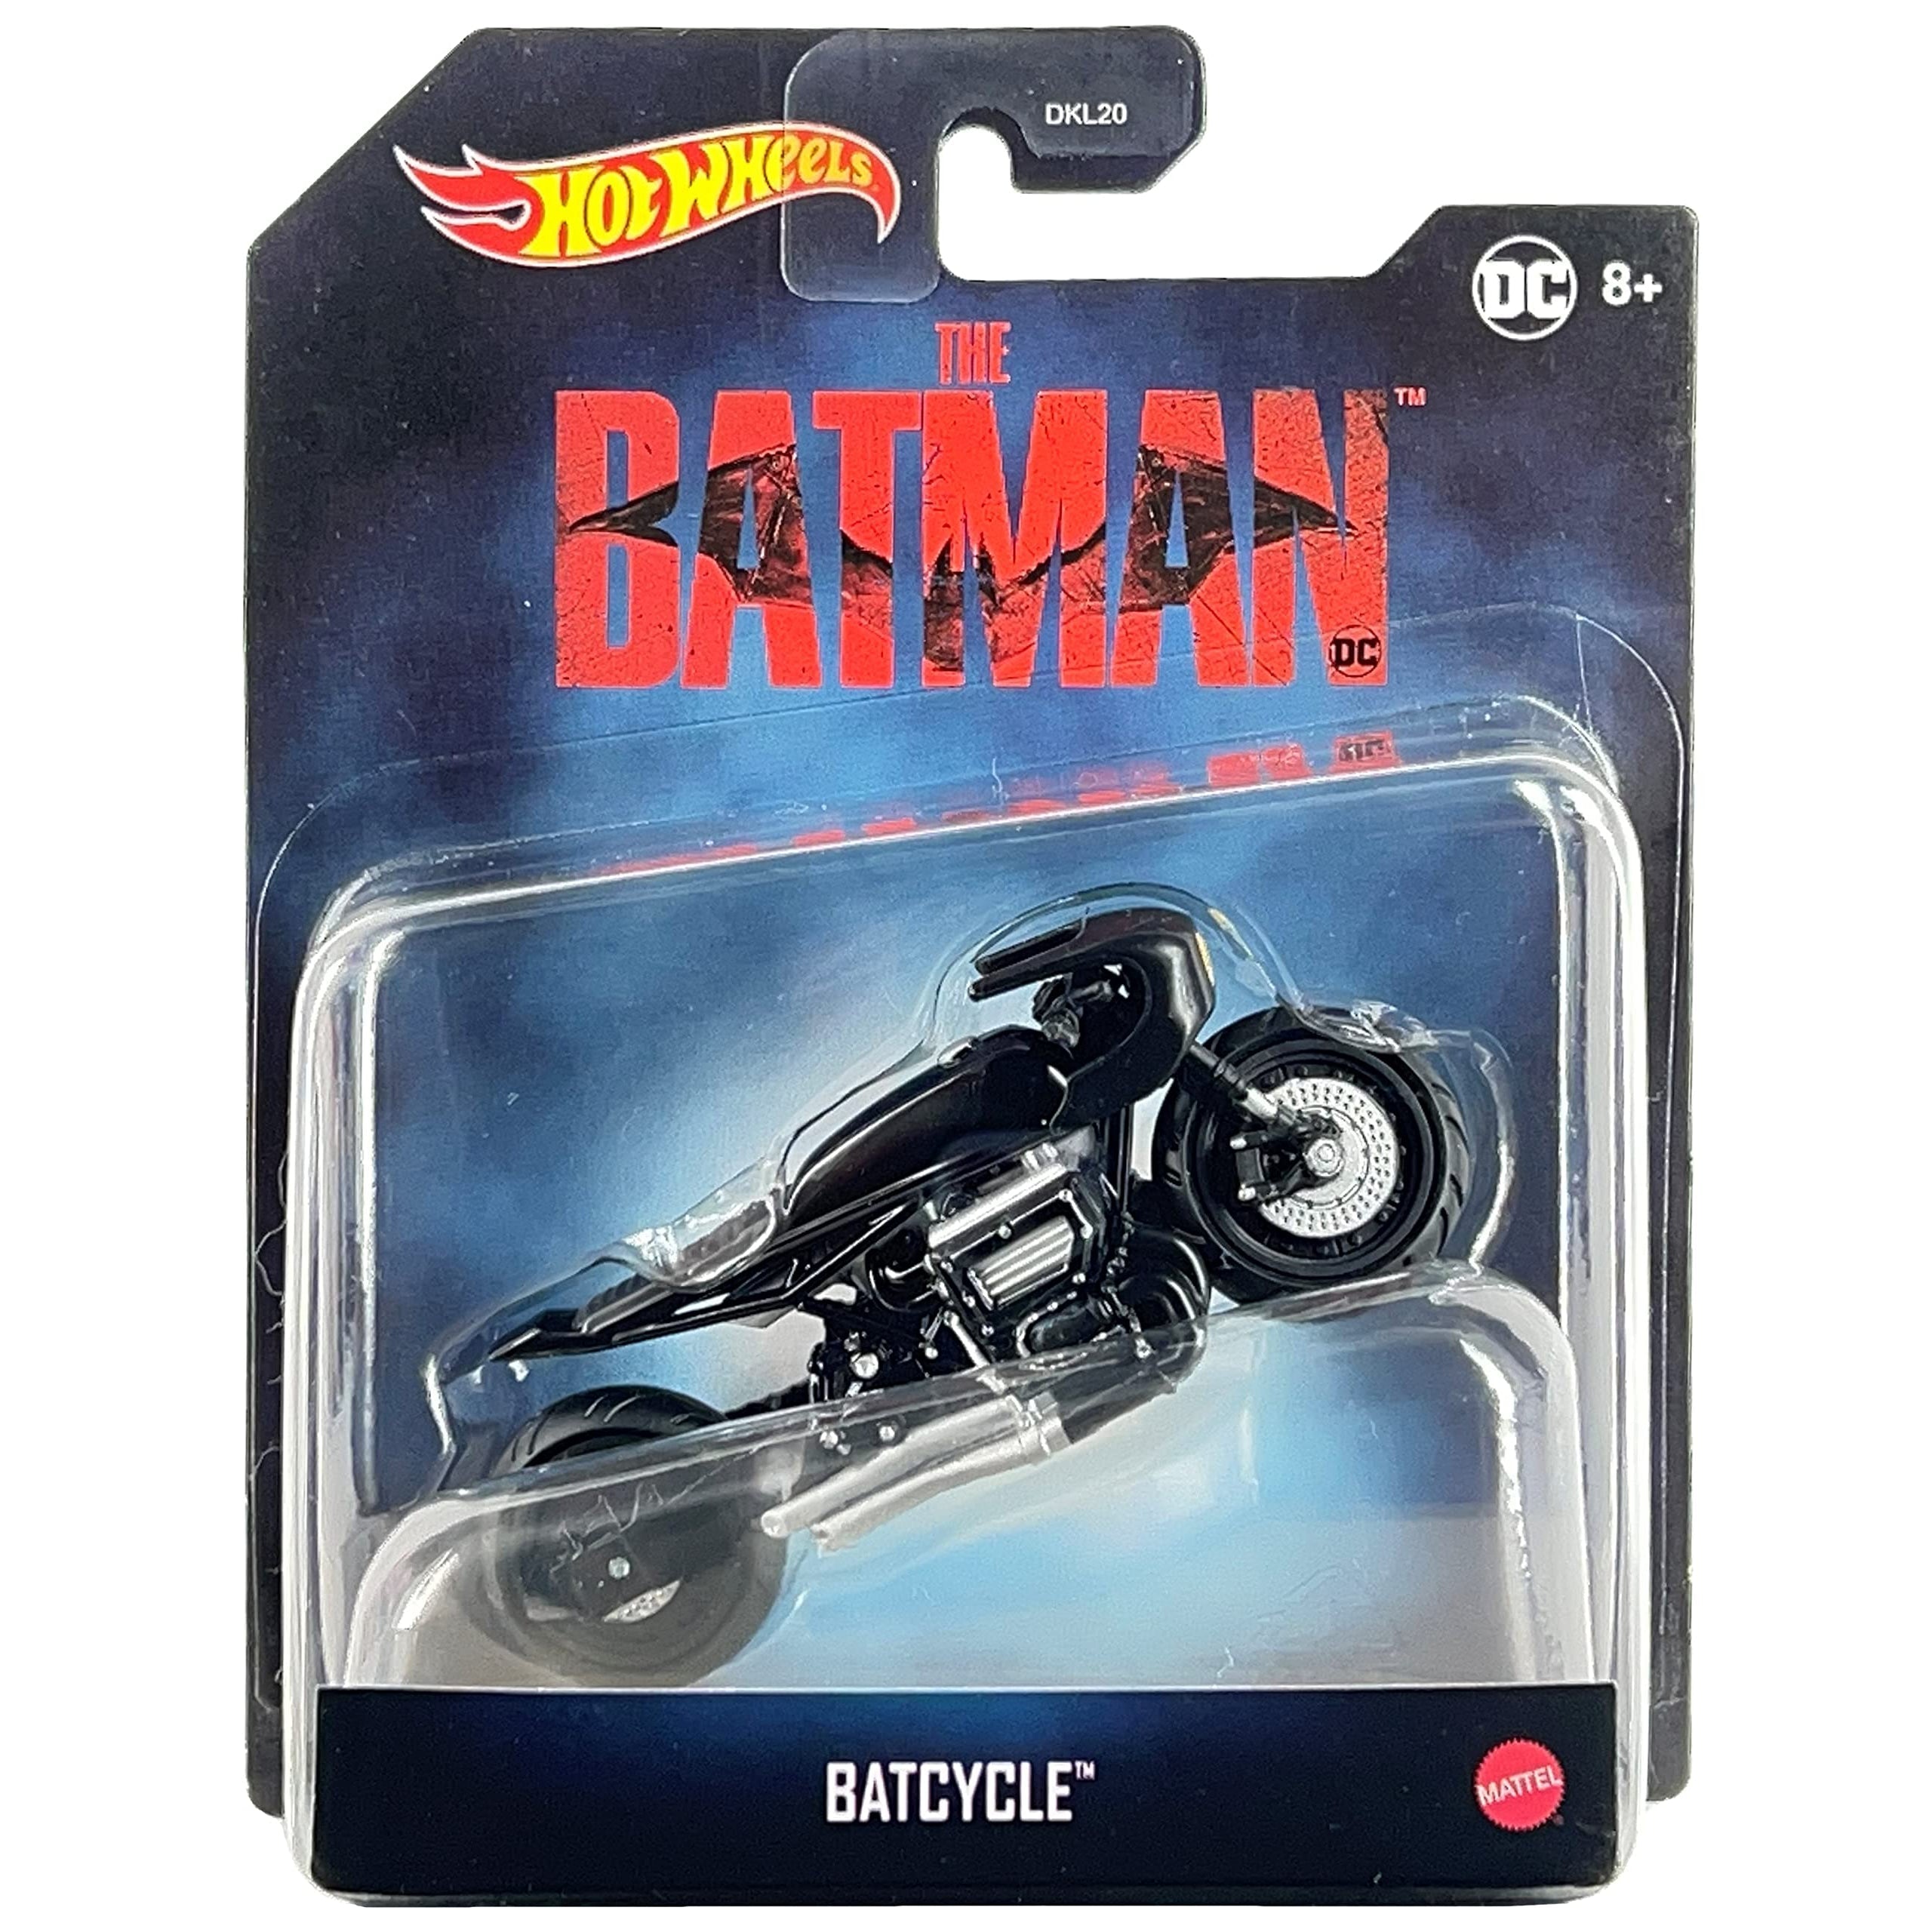 Auto Hot Wheels Coleccion Dc Batman Original Mattel